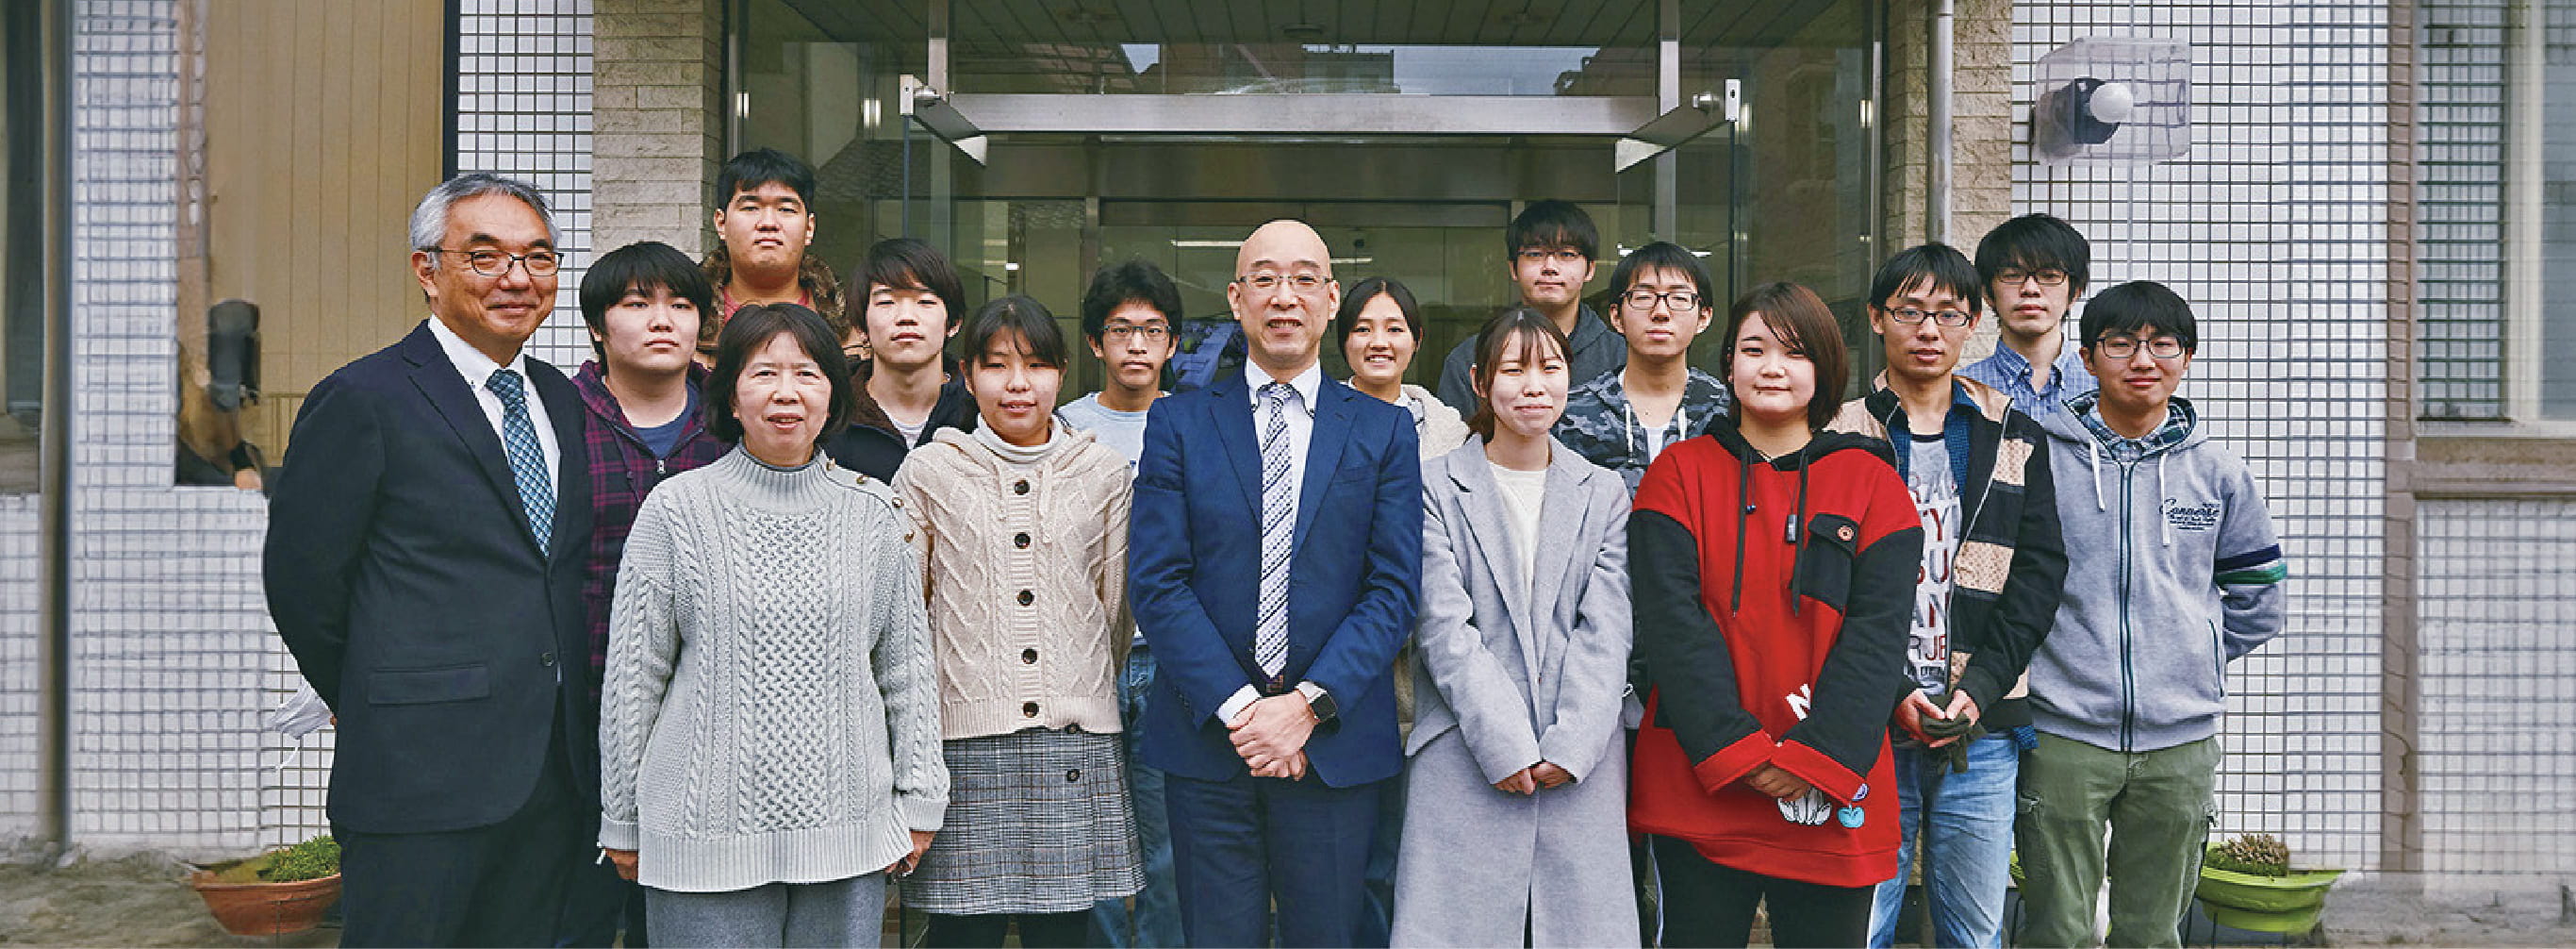 埼玉コンピュータ & 医療事務専門学校はさいたま市大宮区でプログラマーを養成する学校として創立から40年以上の歴史があります。